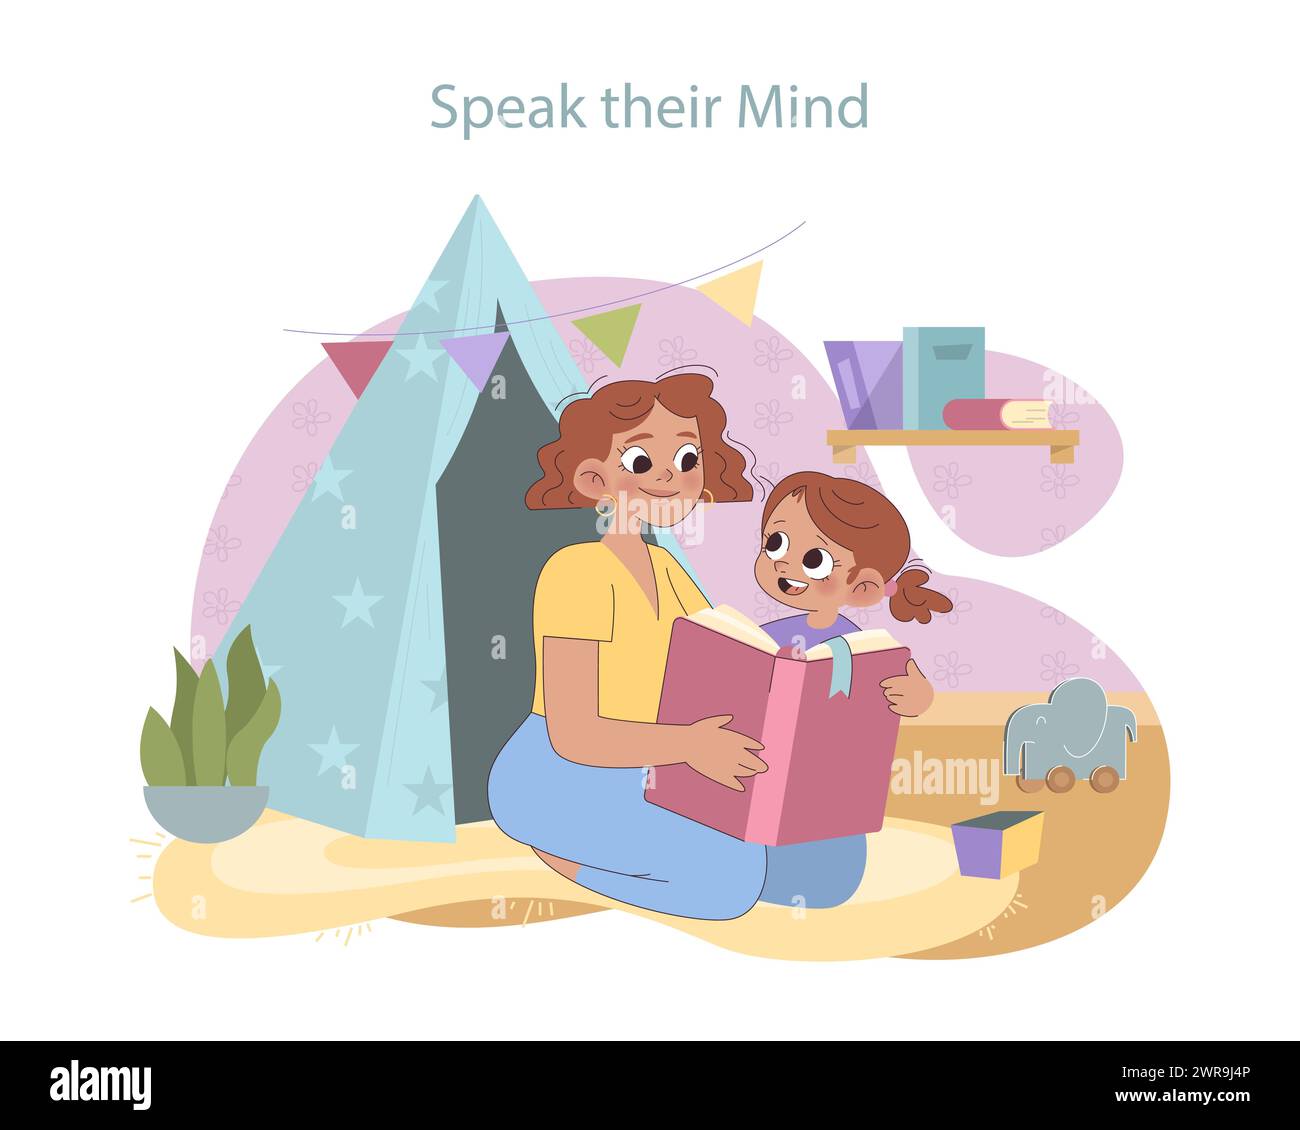 Concetto di voce del bambino. Madre e figlia condividono un momento tenero con un libro di fiabe, sottolineando la comunicazione aperta e l'importanza dell'ascolto. Illustrazione Vettoriale